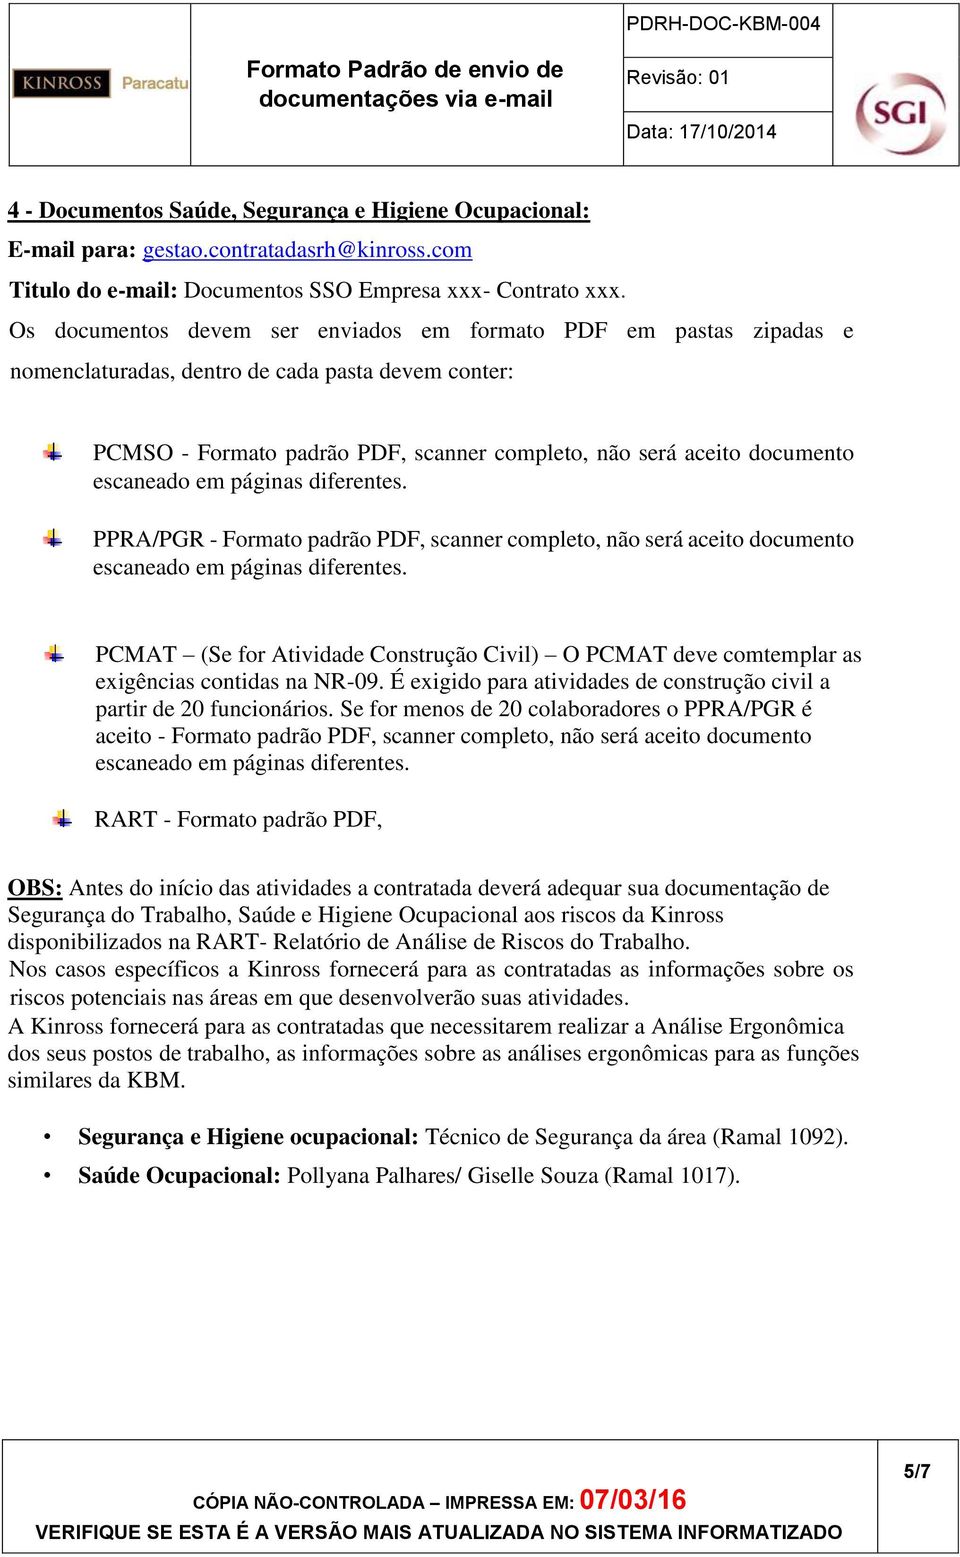 Os documentos devem ser enviados em formato PDF em pastas zipadas e nomenclaturadas, dentro de cada pasta devem conter: PCMSO - Formato padrão PDF, scanner completo, não será aceito documento